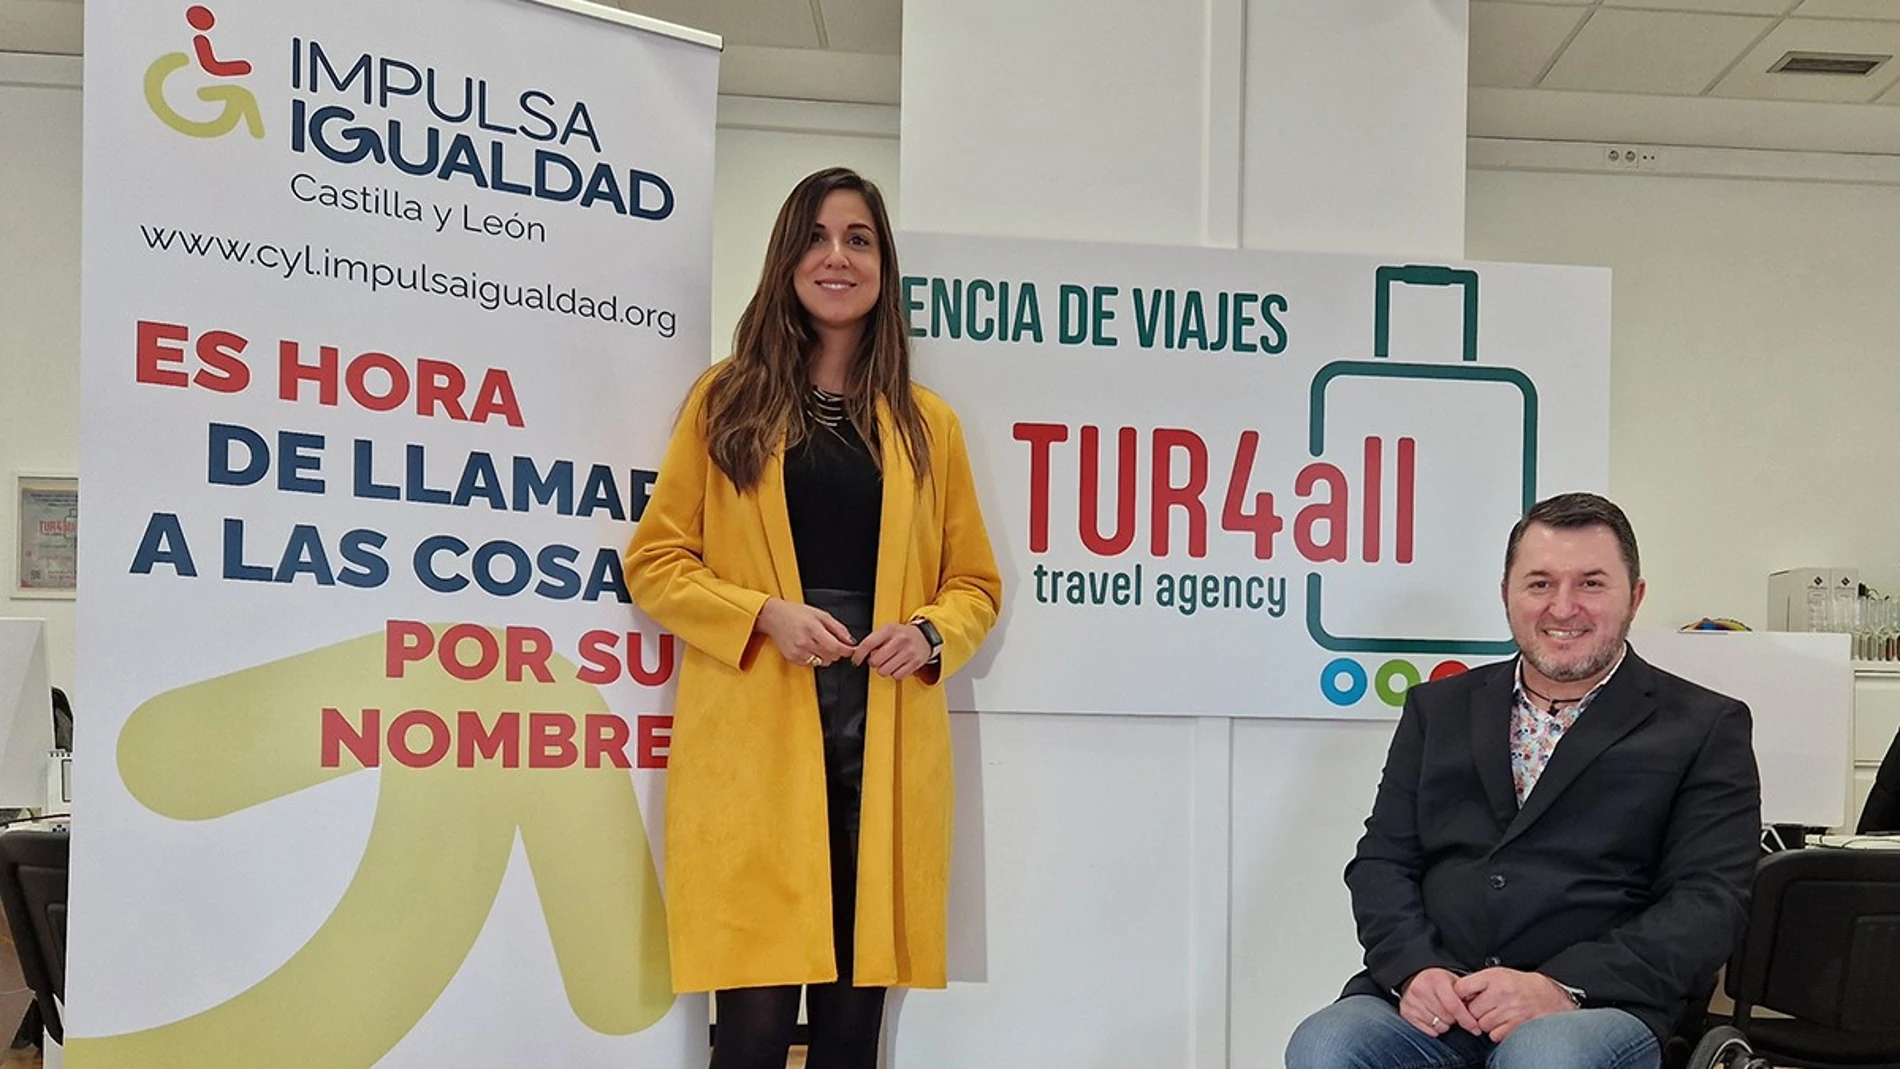 Francisco Sardón y Blanca Jiménez inauguran la oficina de "TUR4all Travel" en Valladolid